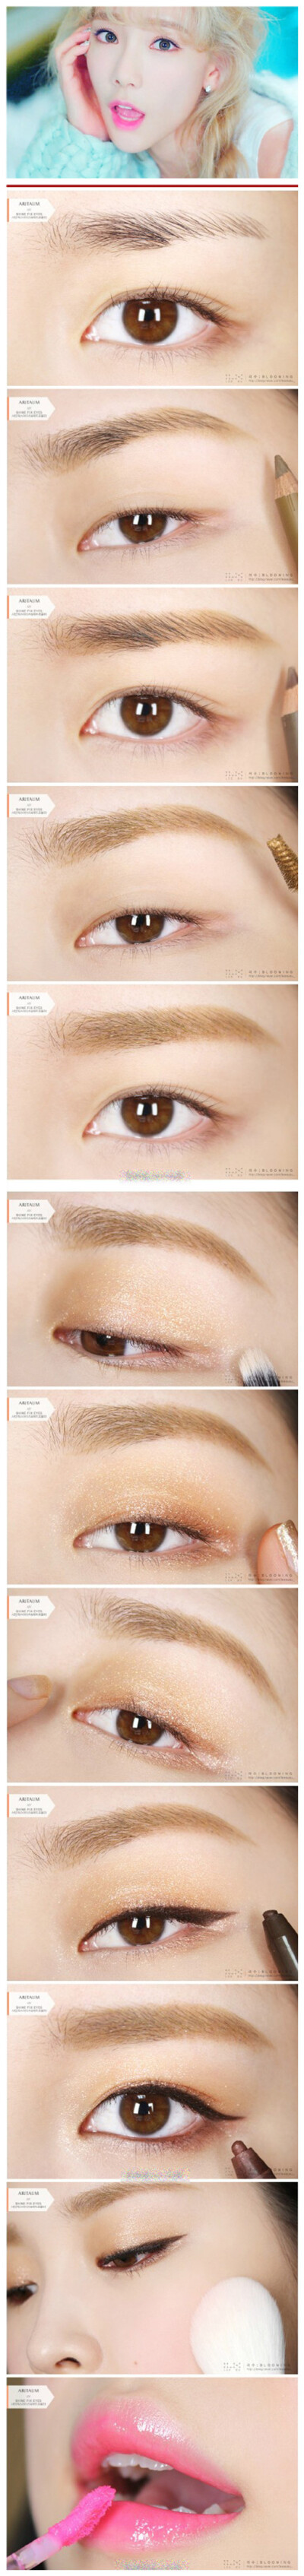 韩网po主以泰妍在TTS新砖《dear santa》中眼妆为灵感的仿妆教程一枚。